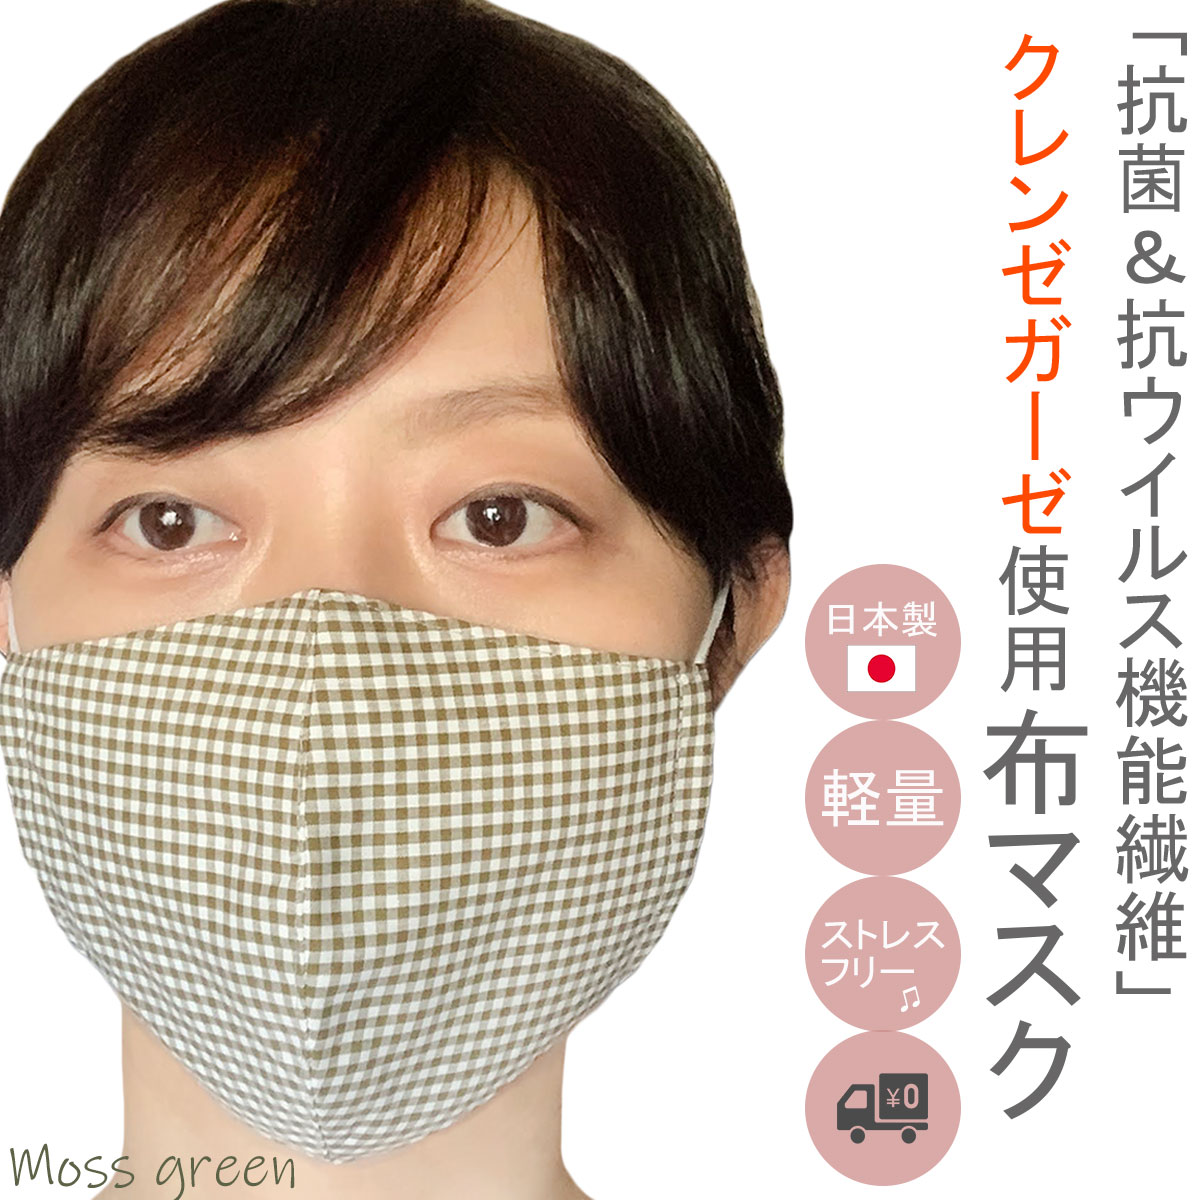 布マスク 抗ウイルス 日本製 クレンゼ 小さめ 抗菌 洗える